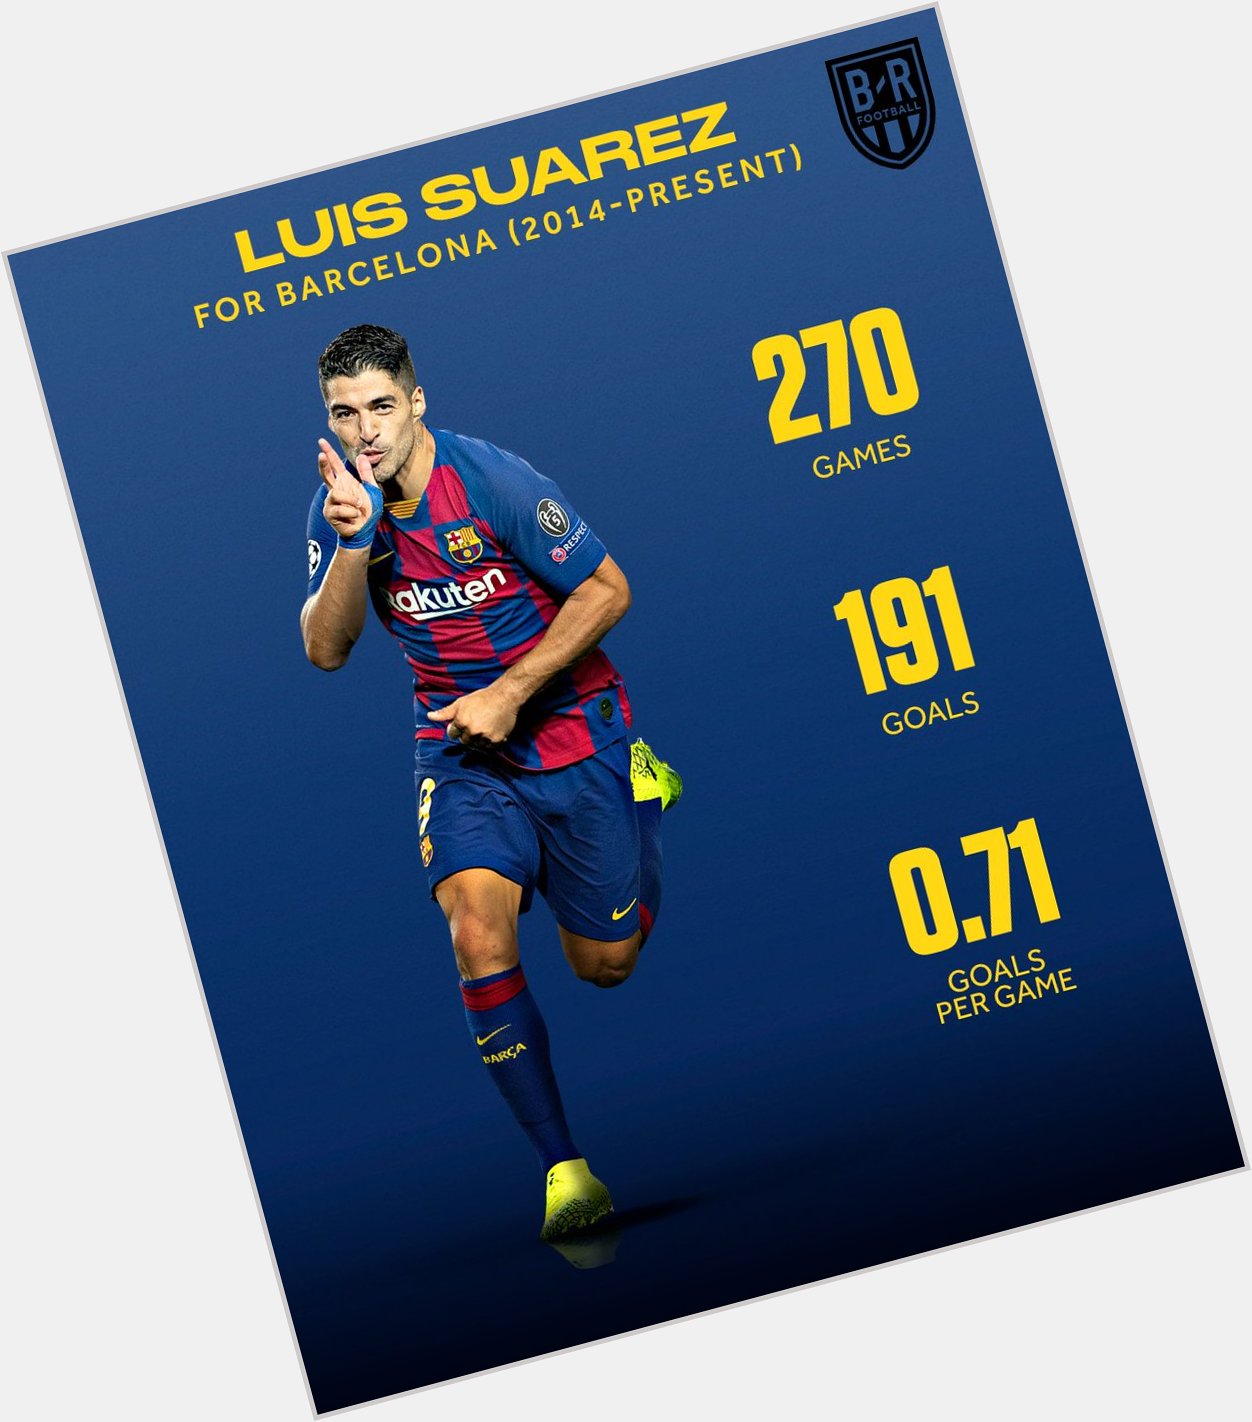 Happy birthday Luis Suarez. 